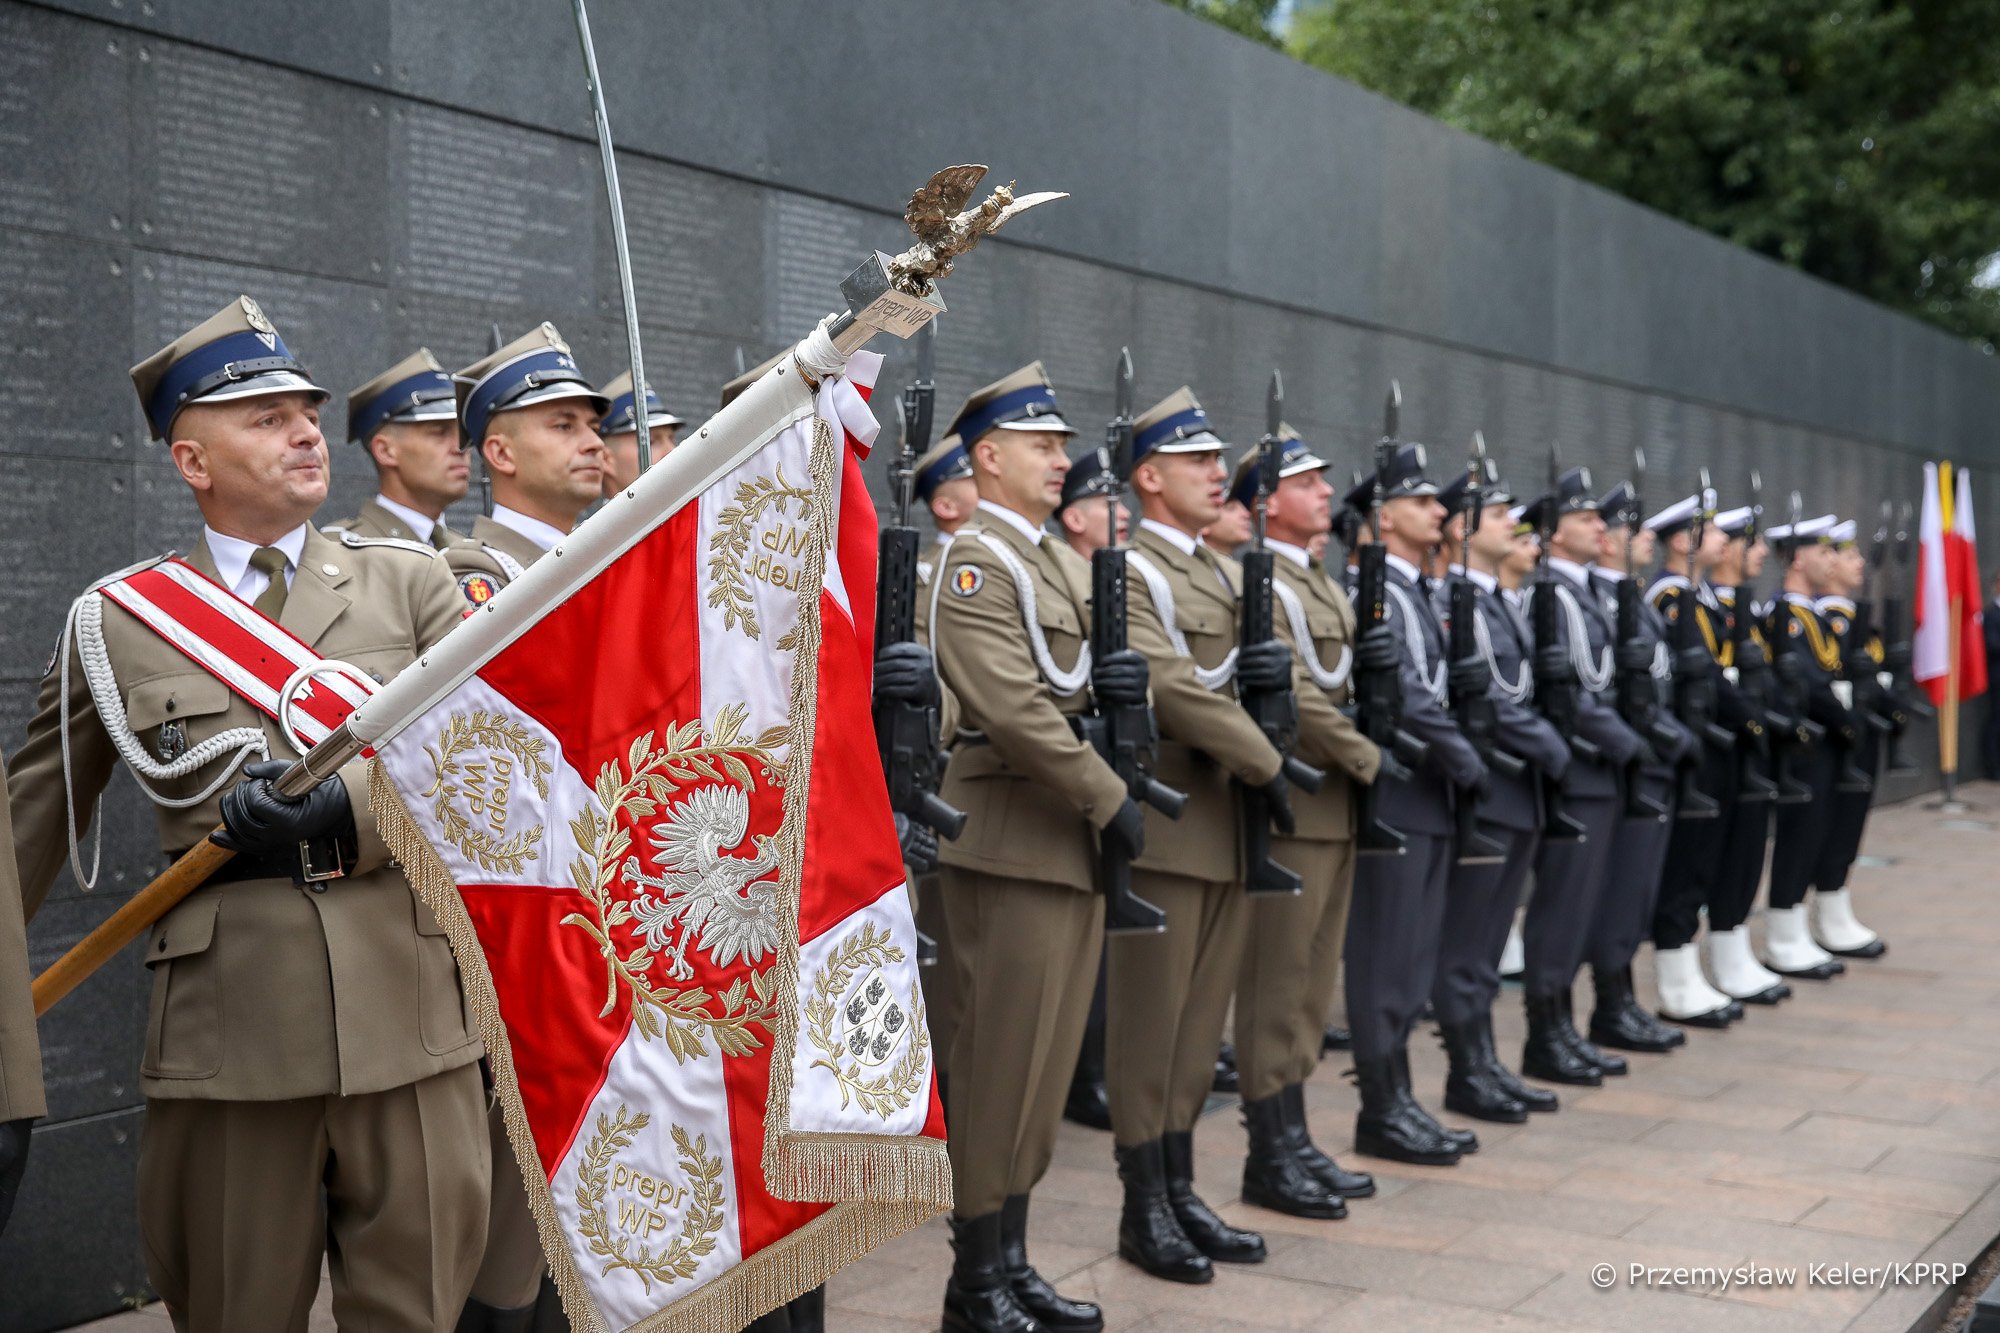 A lengyel elnök nyitotta meg a lerombolt Mariupolról szóló kiállítást Varsóban